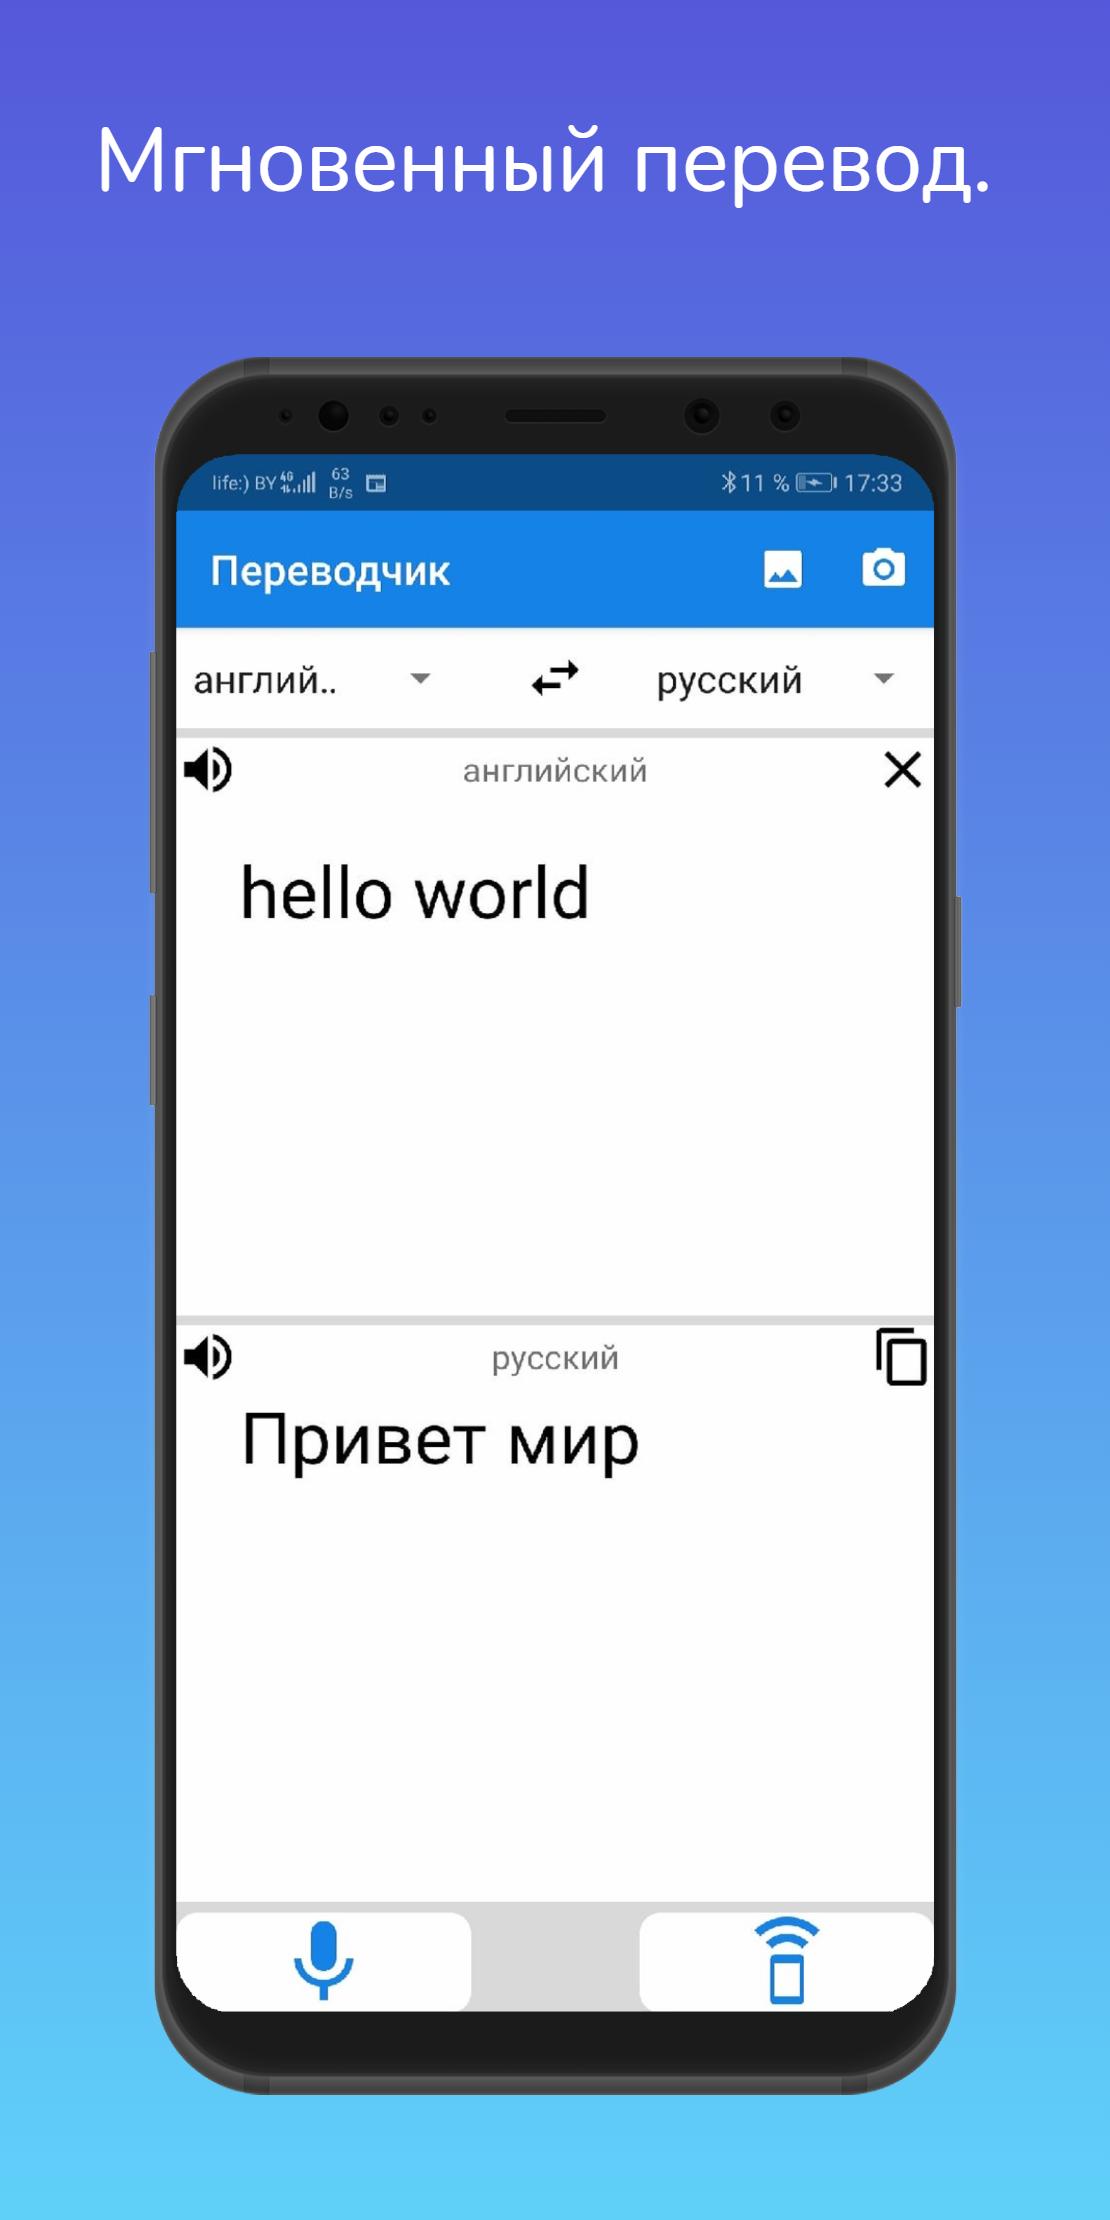 Английский язык голосовое. Приложение для изучения иврита. Якутский разговорник. Translate Google app mobile. Traduction.